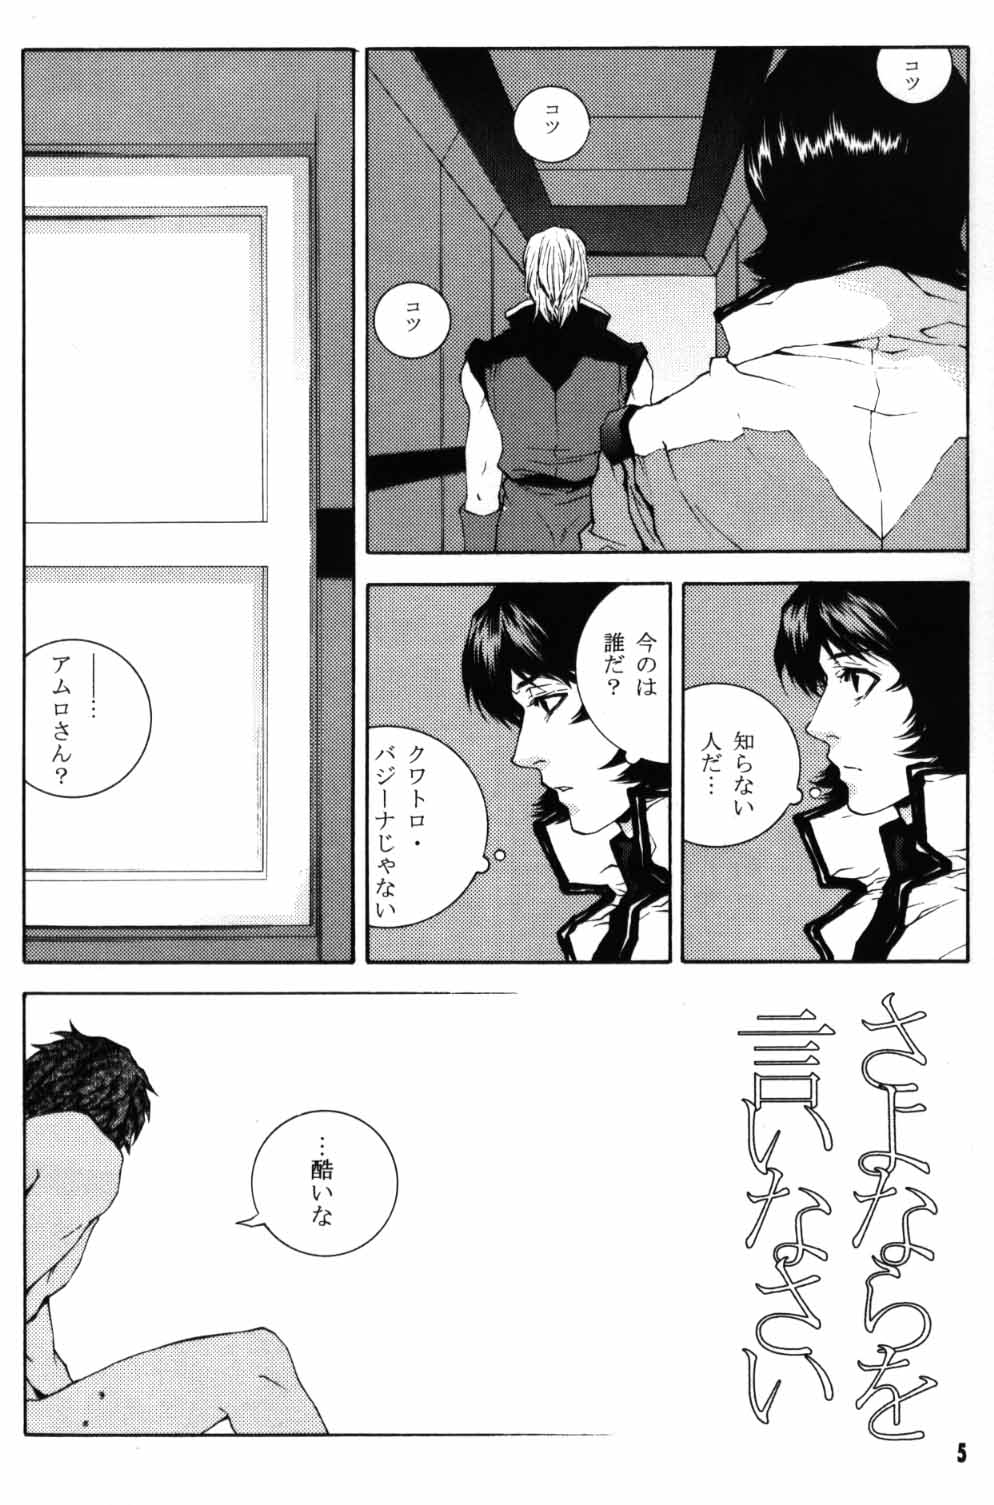 [APART (Yanagisawa Yukio)] Koi no you na Bakemono ga. (Zeta Gundam) page 3 full